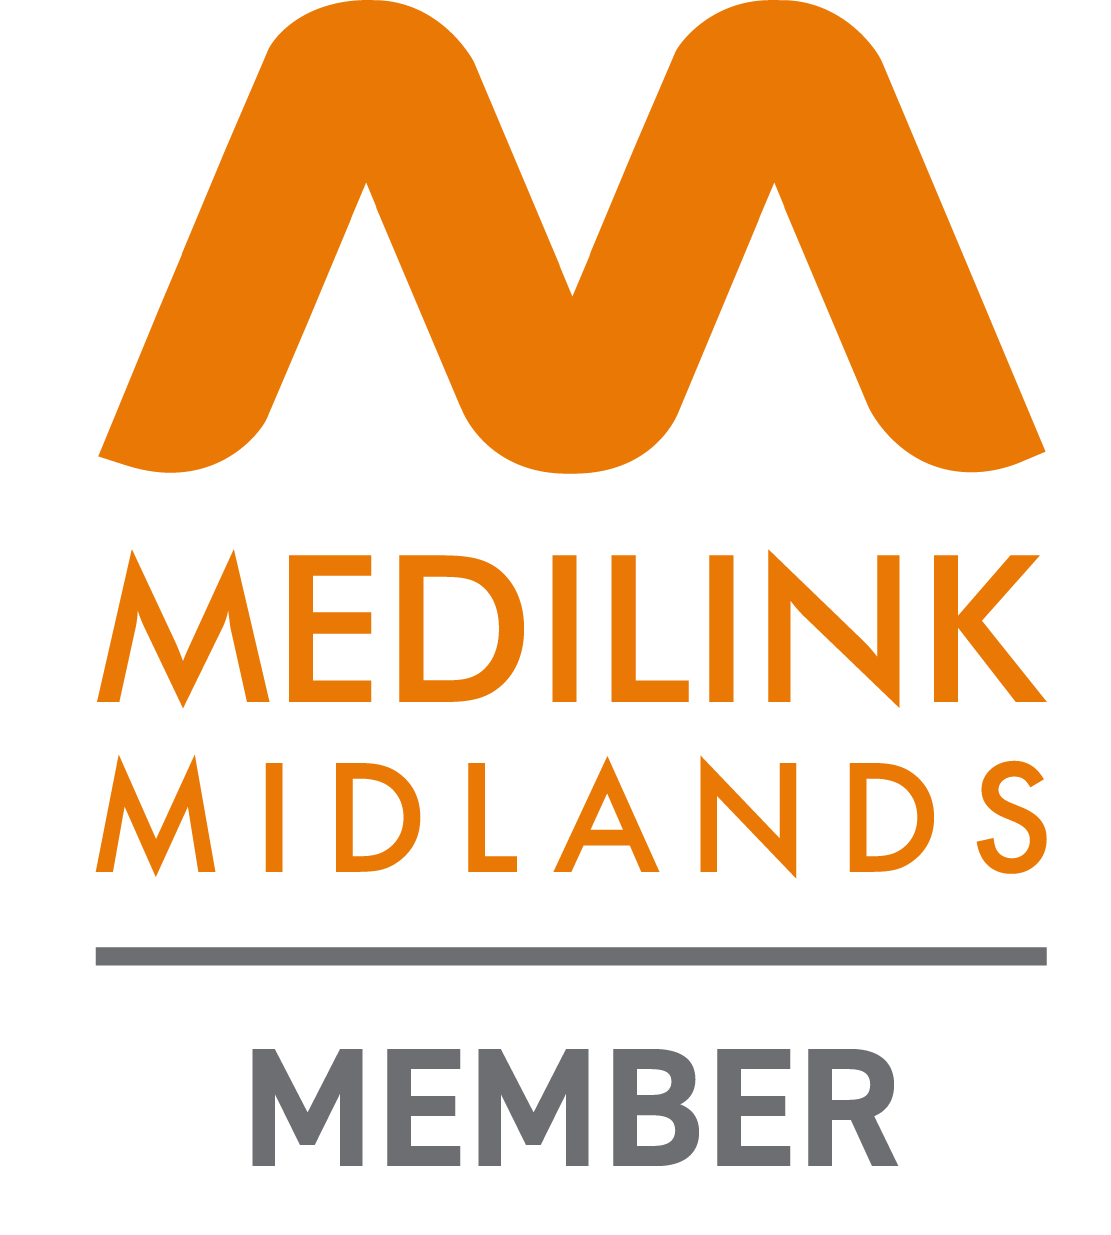 Medilink-Midlands-Member_RGB_large.png__PID:e441d9f5-26cc-4b13-8c16-46dde04e3fad